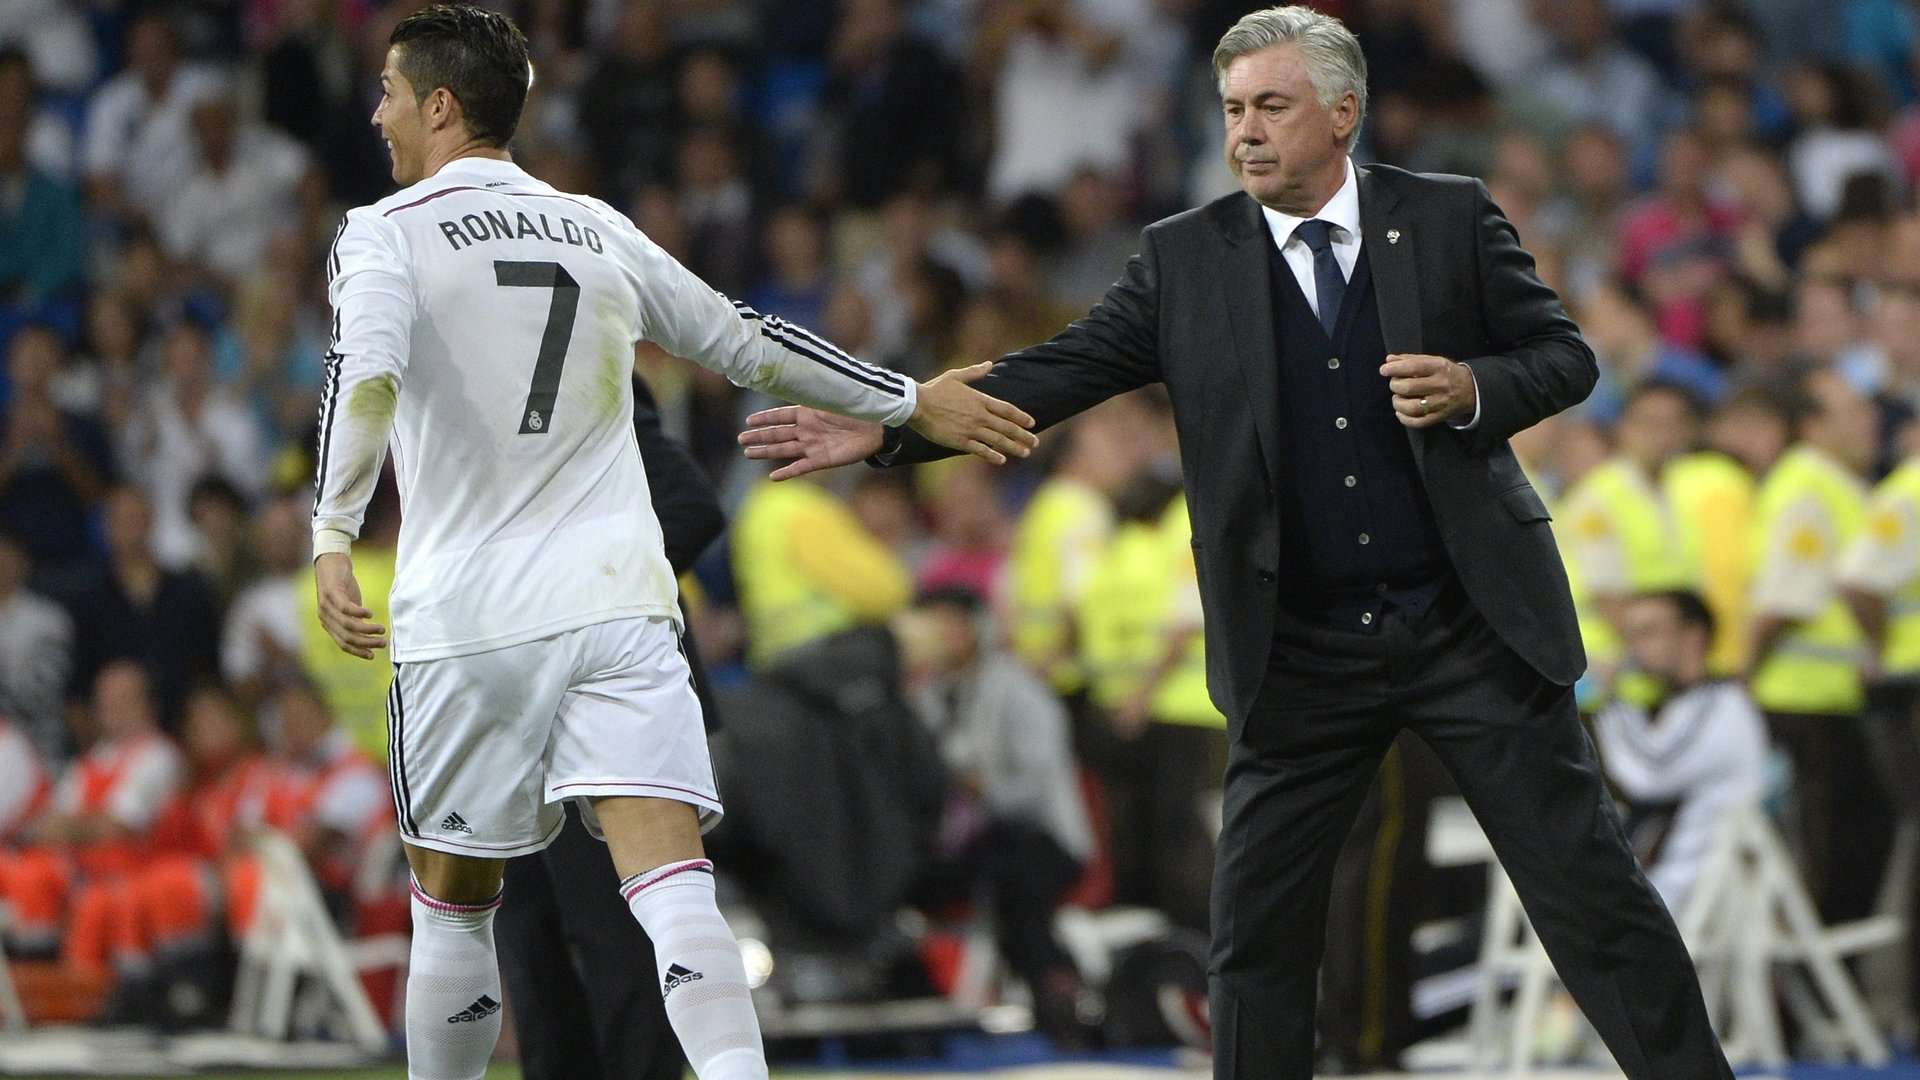 Carlo Ancelotti and Cristiano Ronaldo